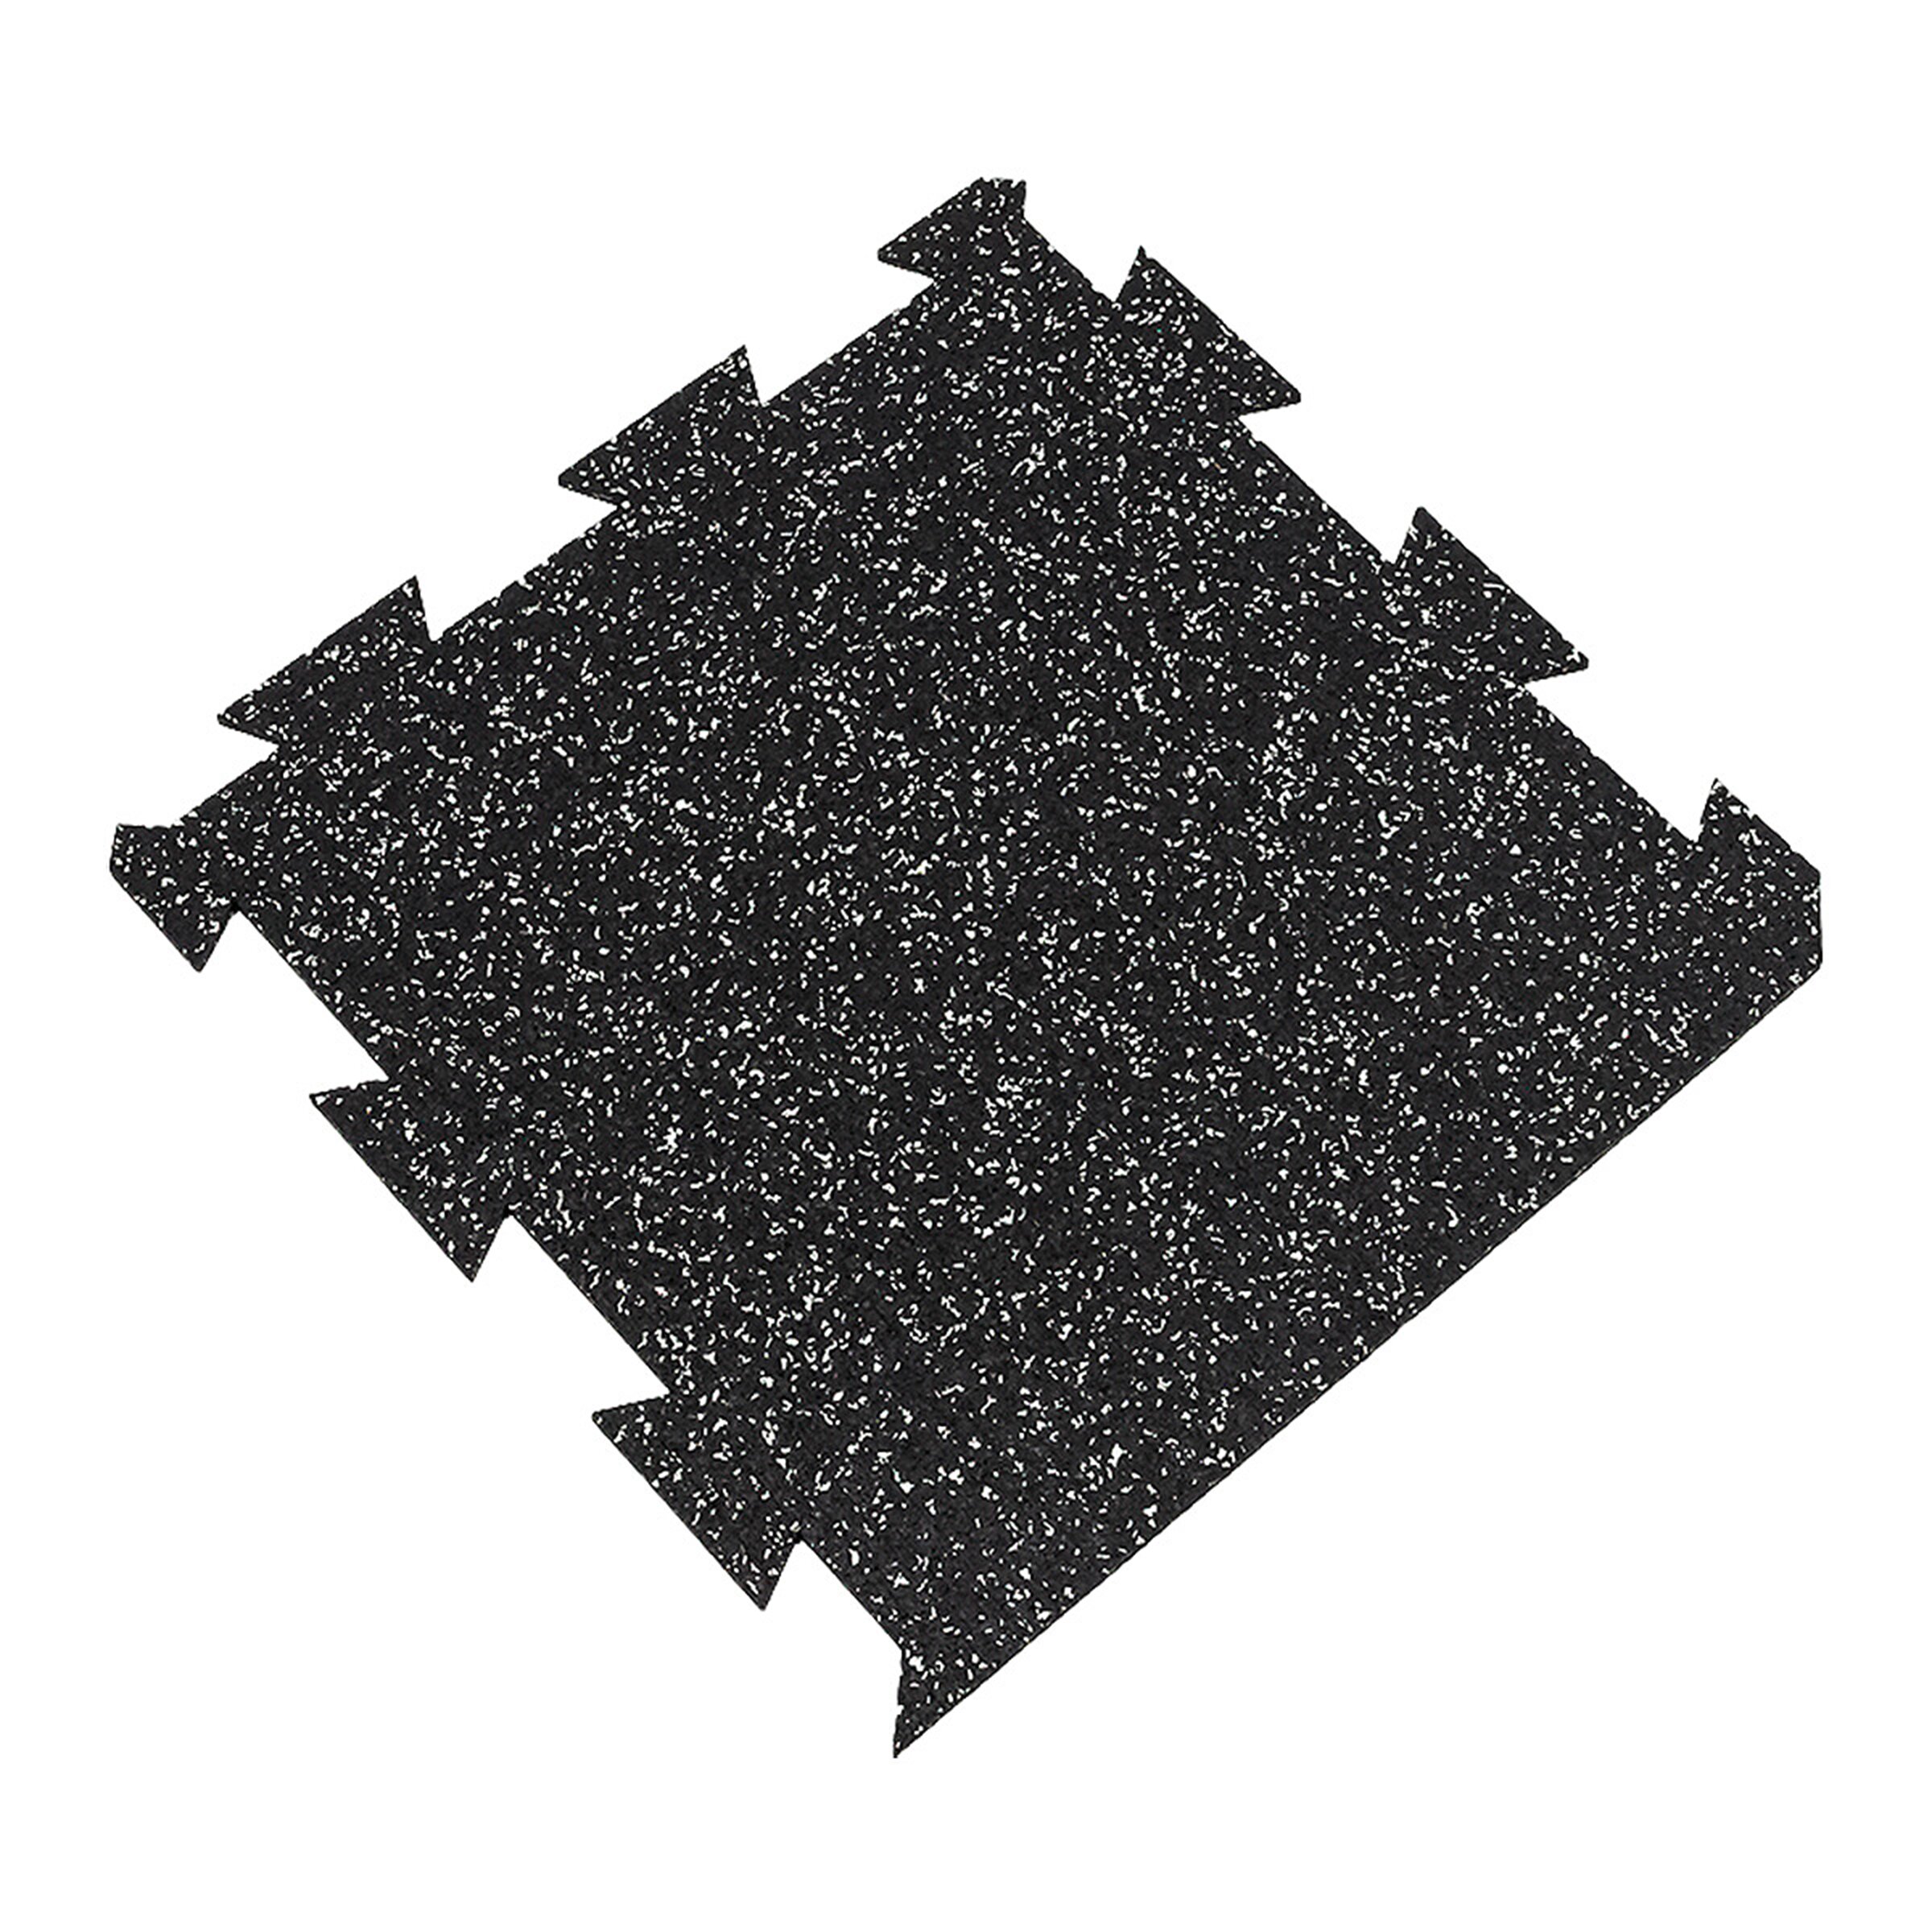 Černo-bílá gumová puzzle modulová dlaždice (okraj) FLOMA SF1050 FitFlo - délka 50 cm, šířka 50 cm, výška 0,8 cm